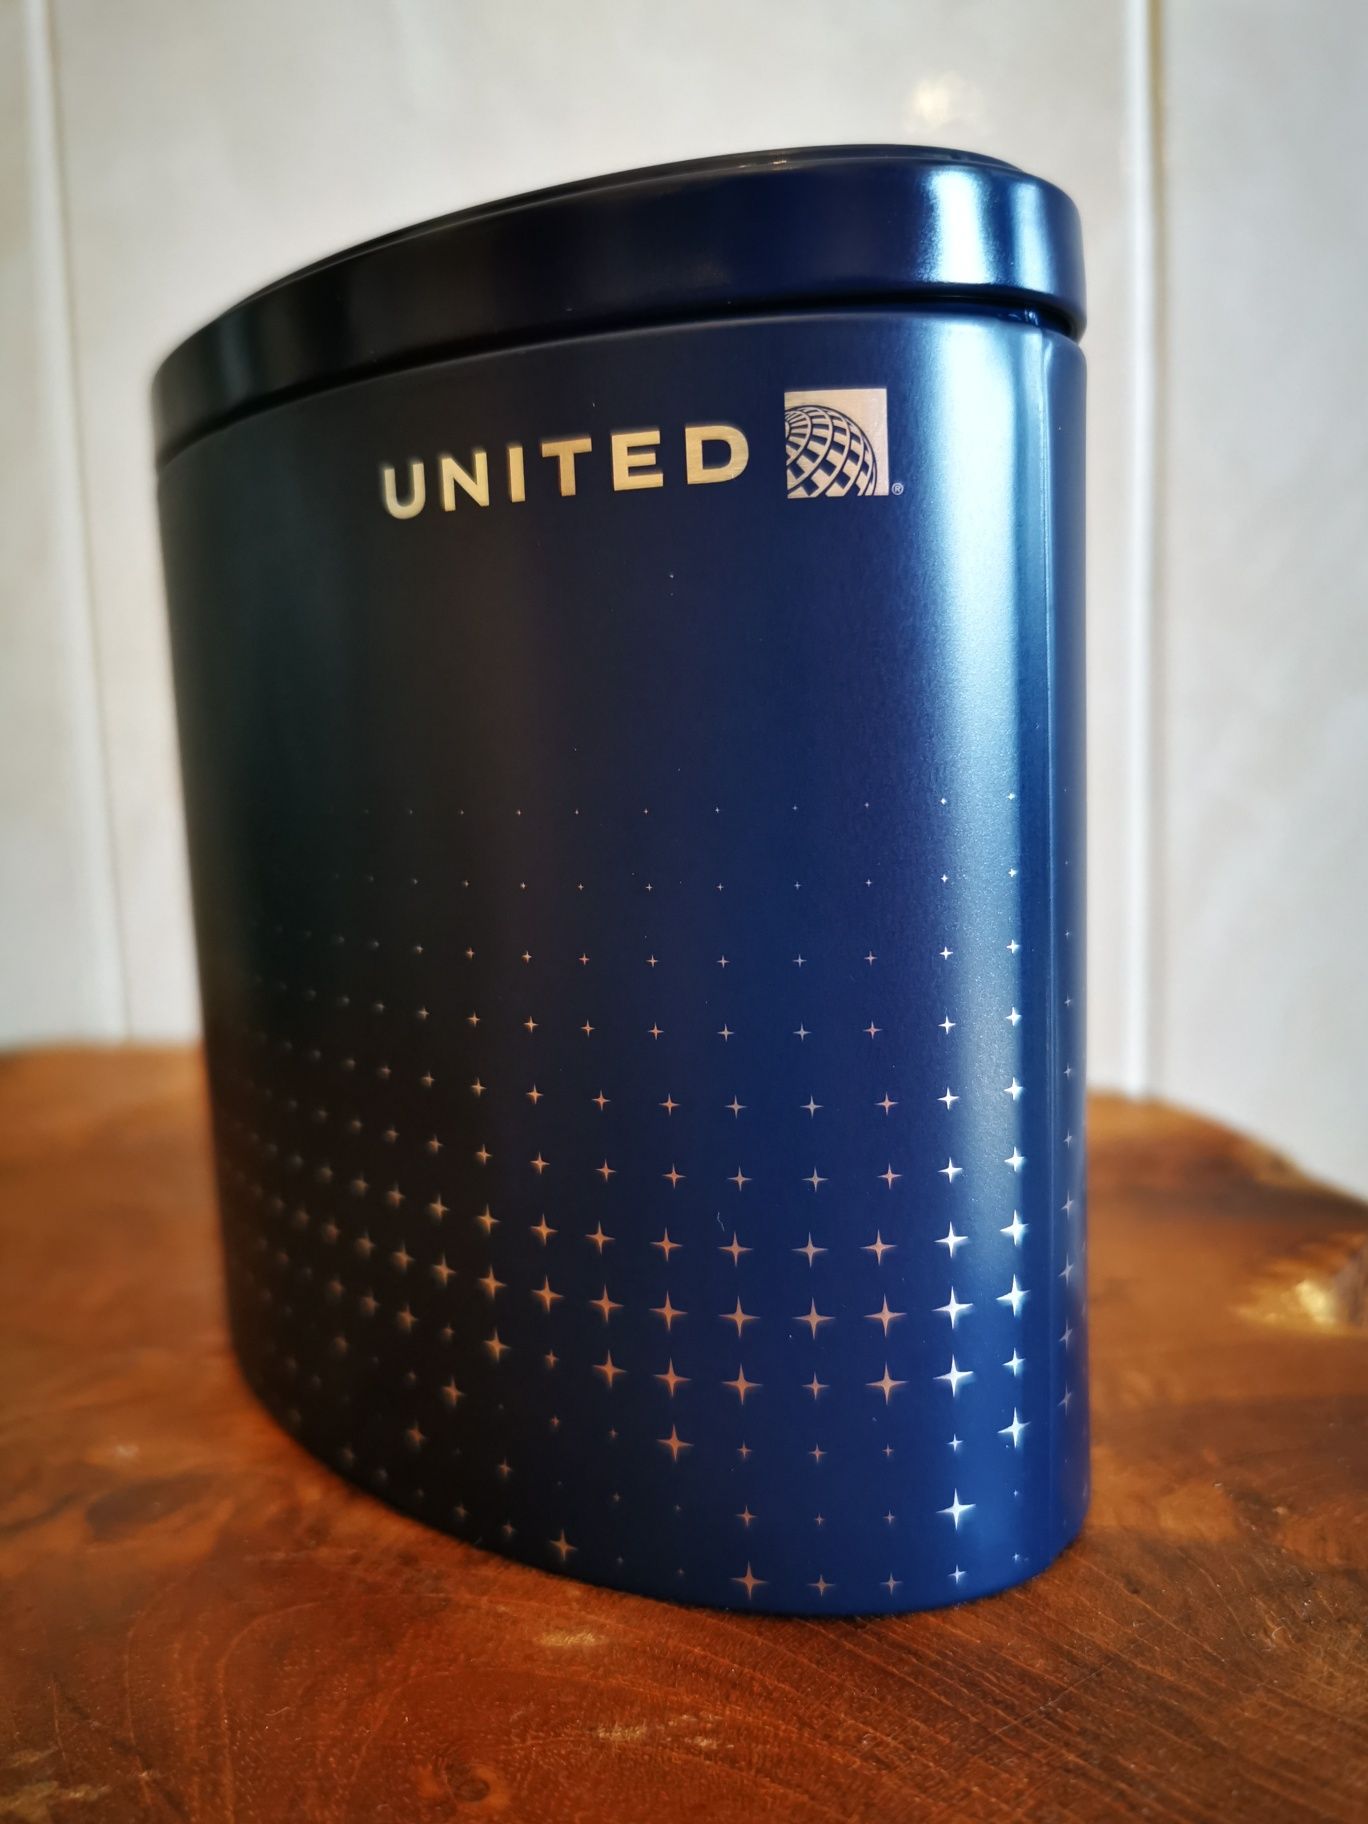 Bolsa de Classe Executiva - United Airlines